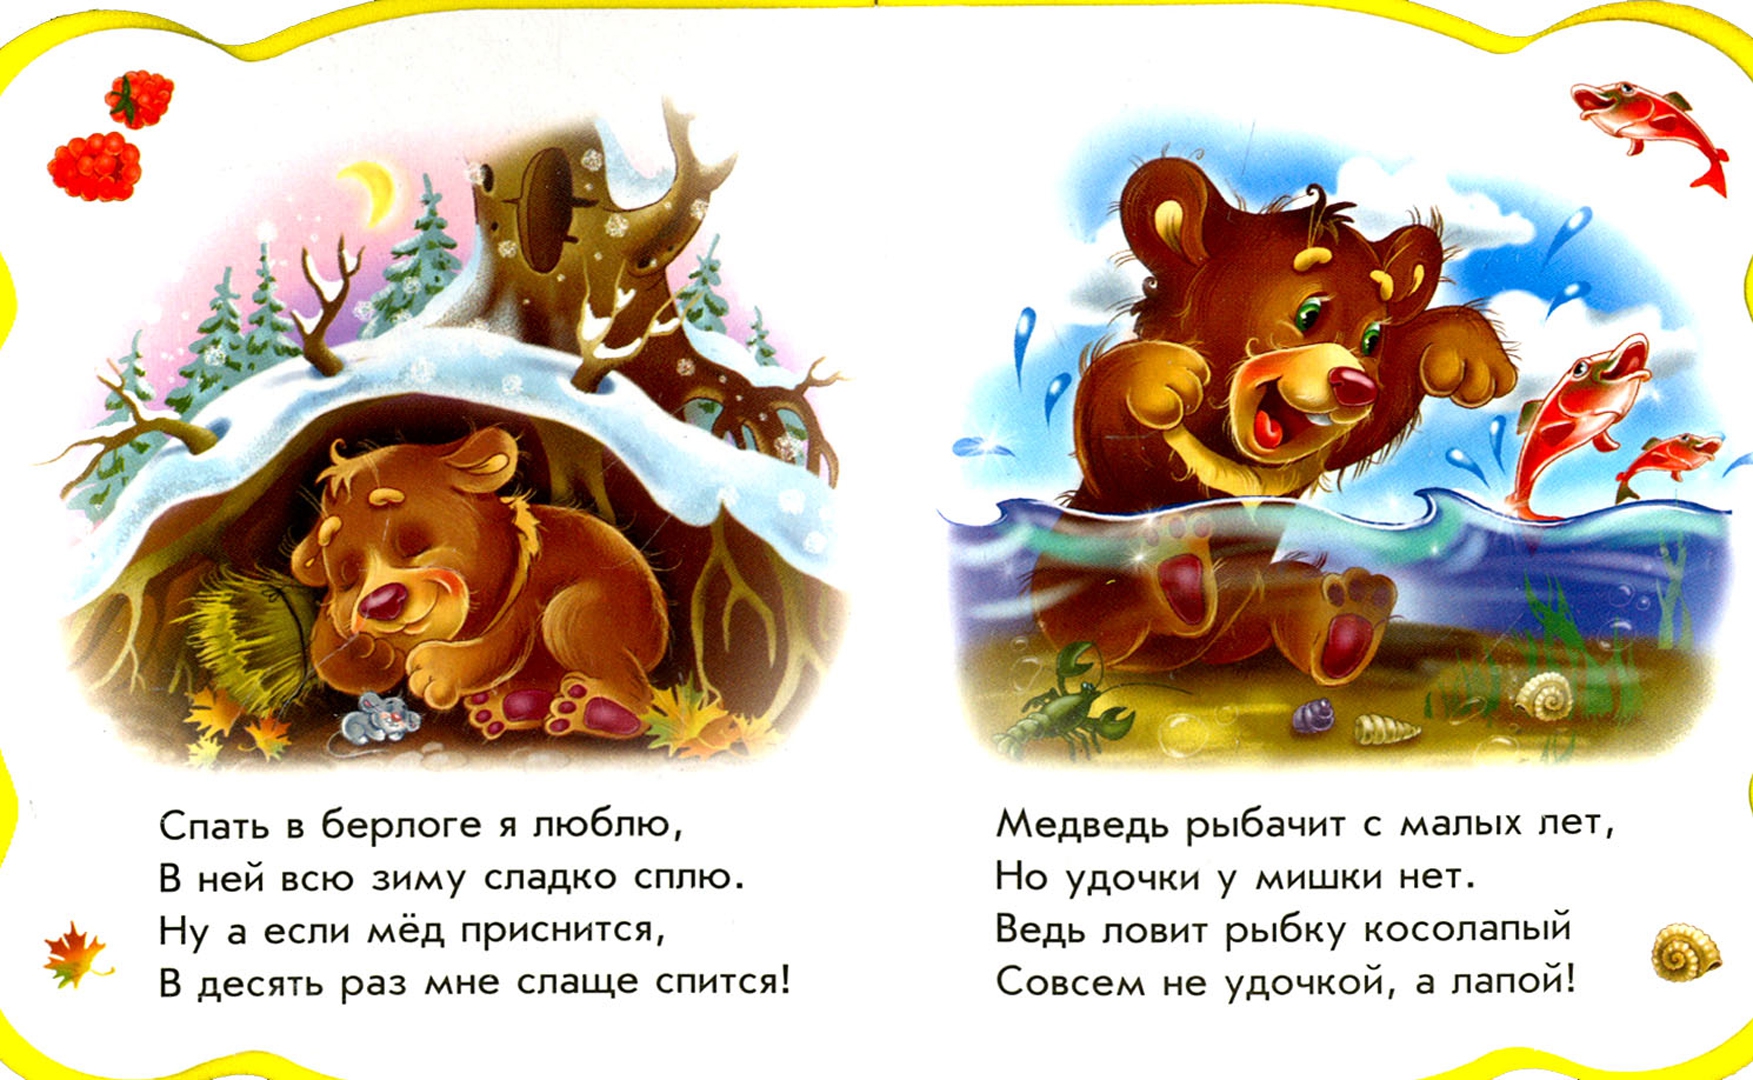 Иллюстрация 1 из 9 для Все про медвежонка - Ирина Солнышко | Лабиринт - книги. Источник: Лабиринт